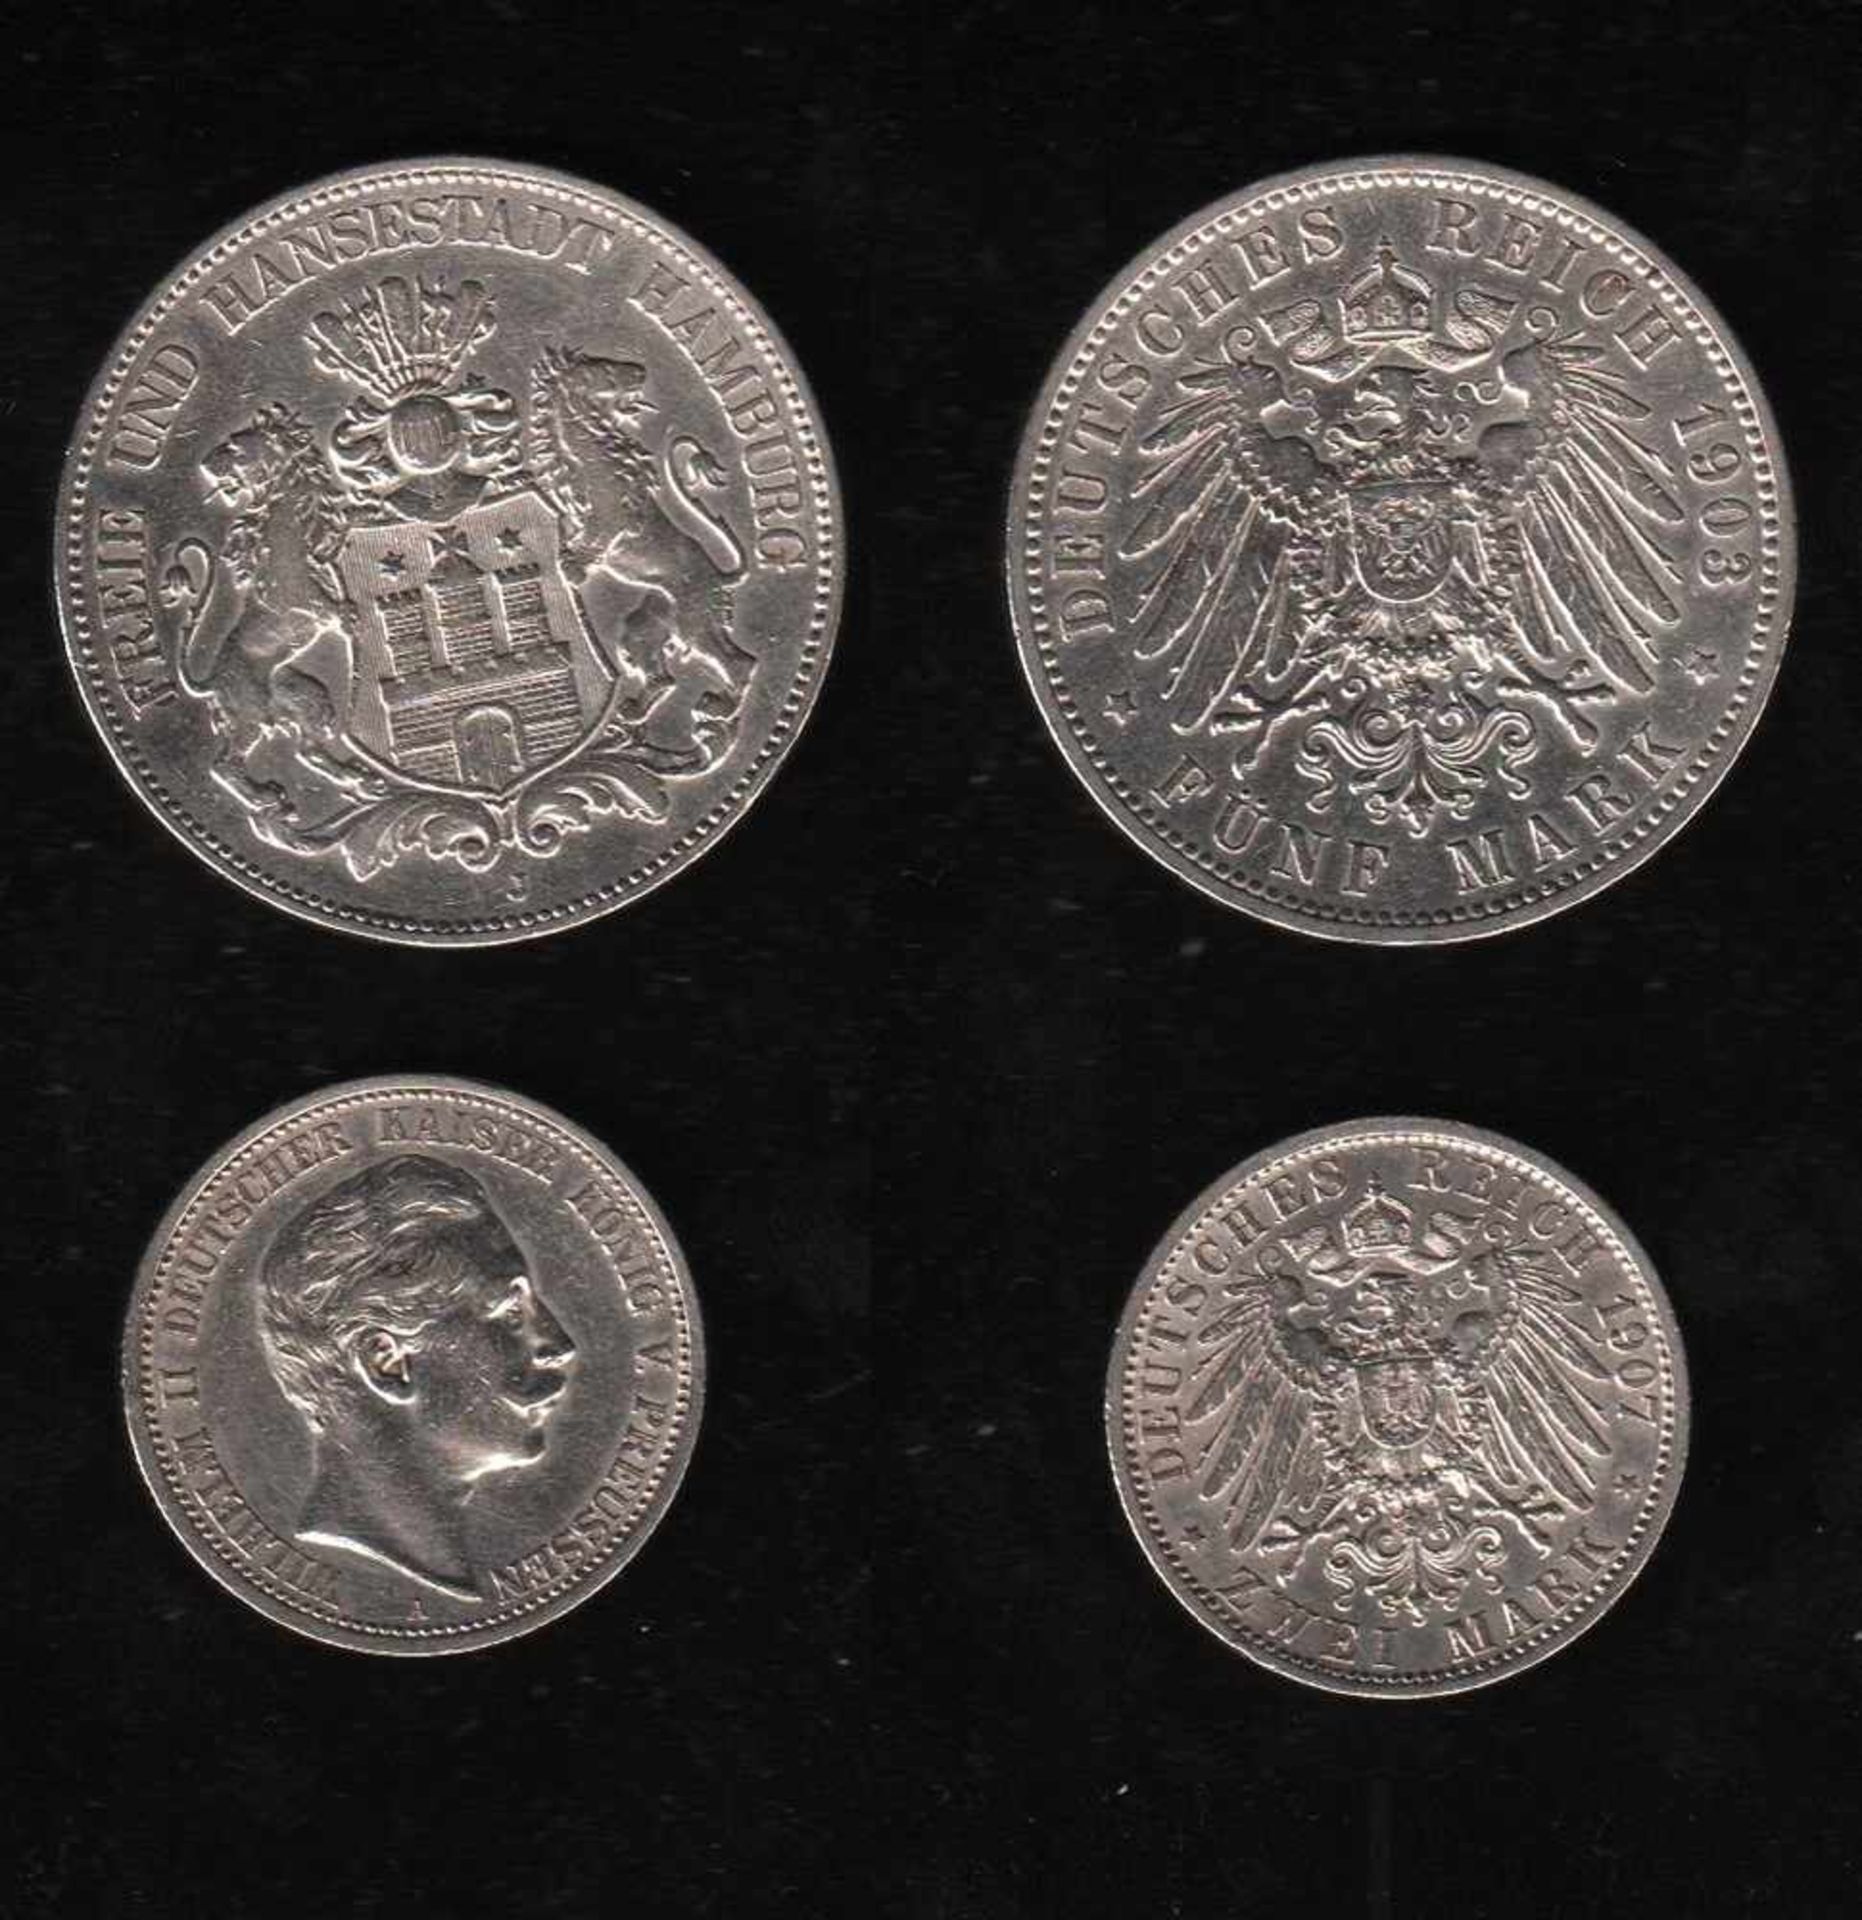 # Deutsches Reich. Silbermünze. 5 Mark. Freie und Hansestadt Hamburg. J 1903. Vorderseite: